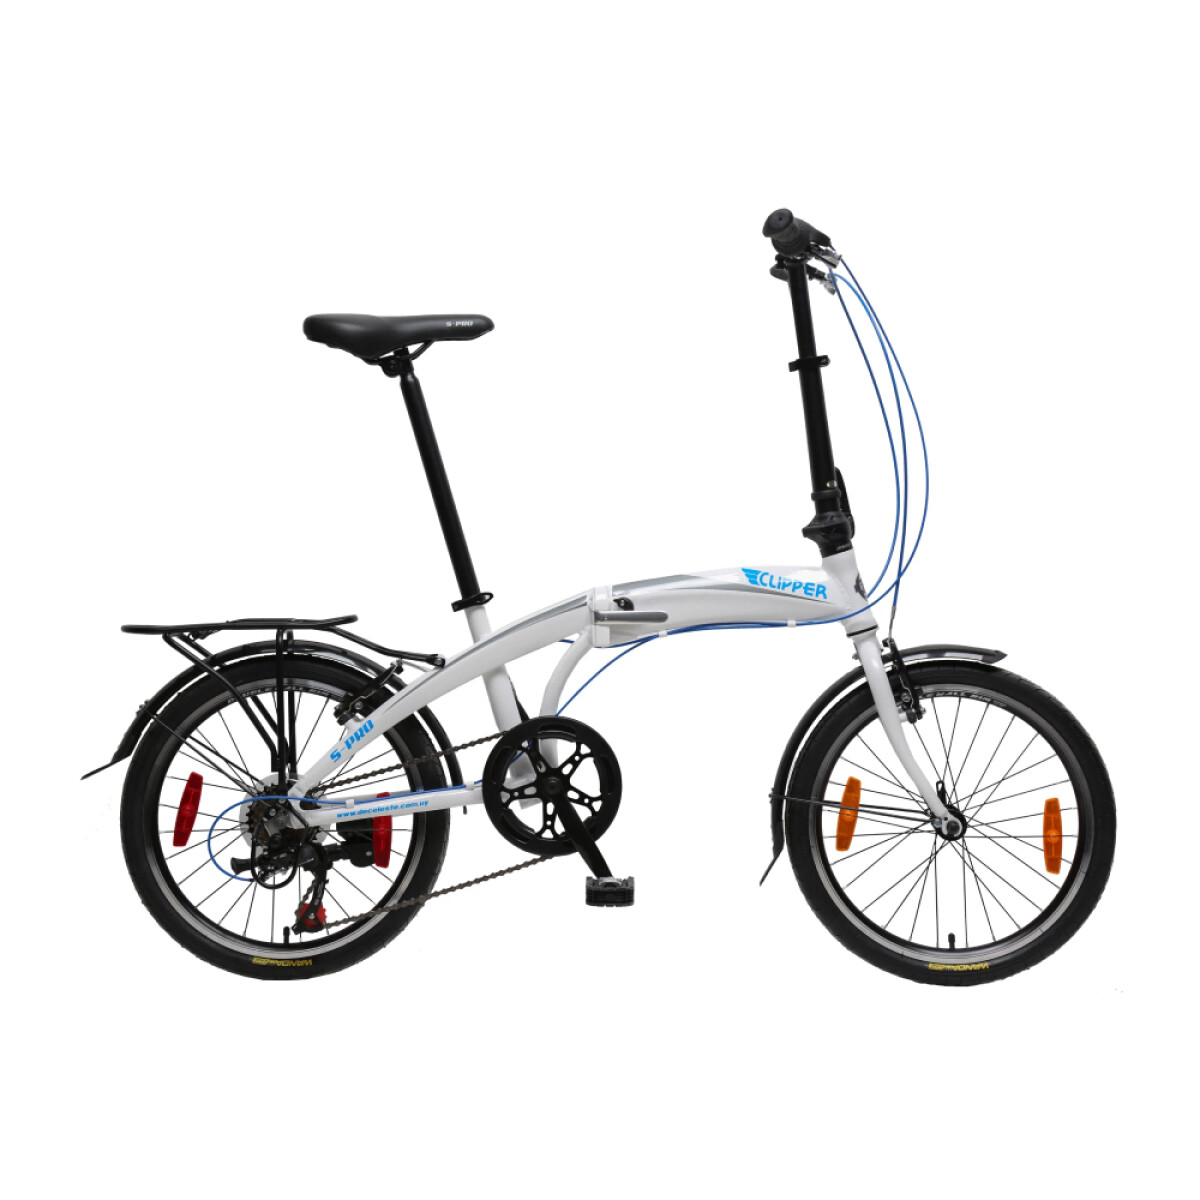 Bicicleta S-PRO Clipper - Gris y Celeste 